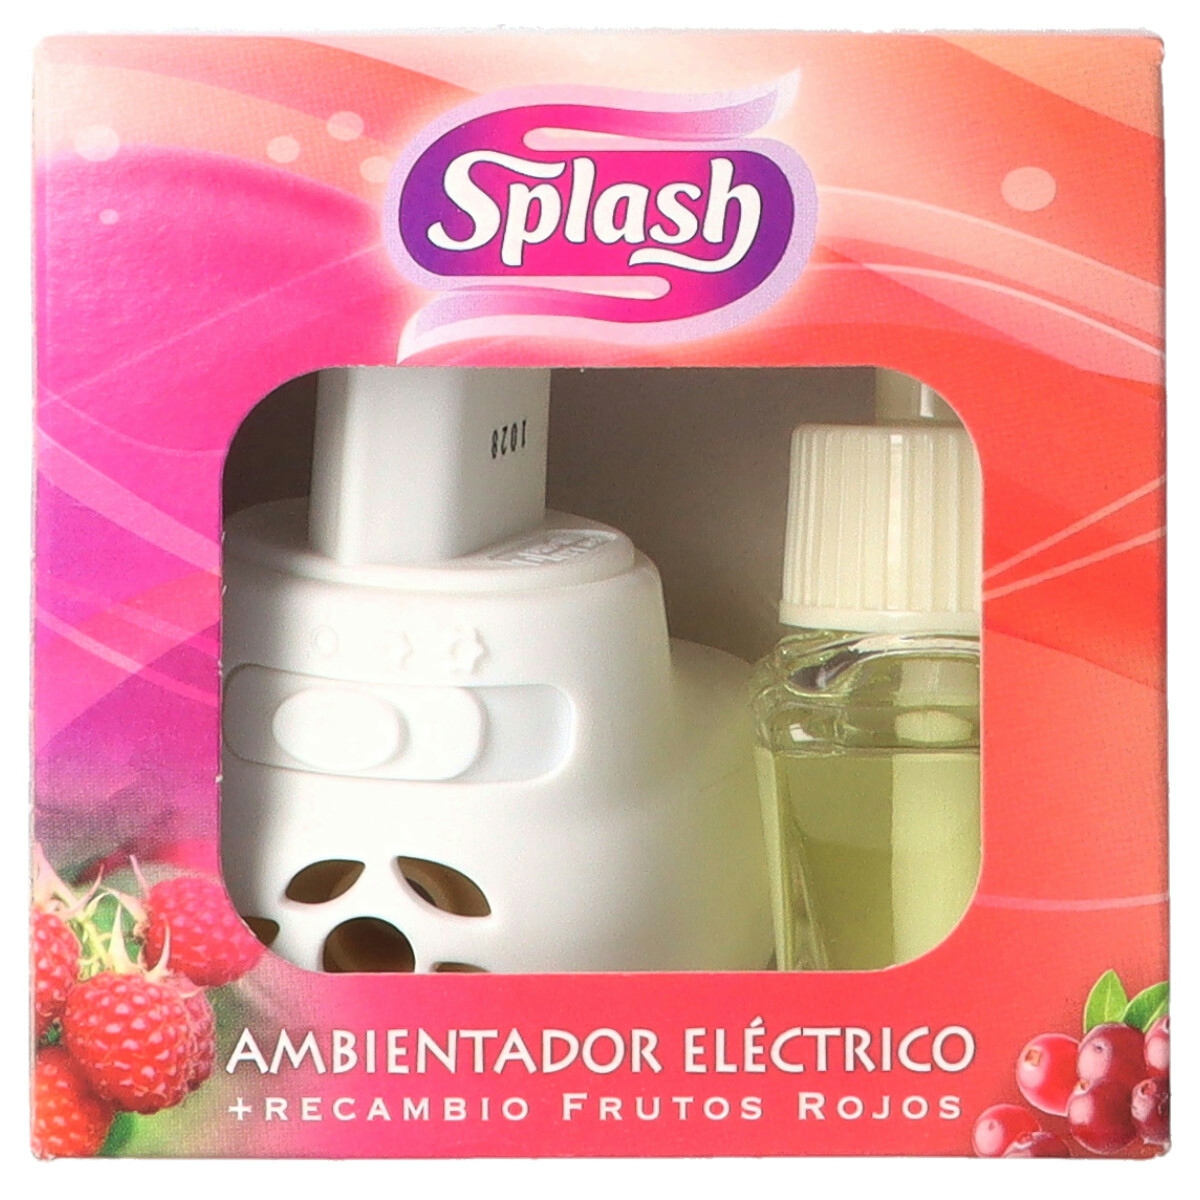 Ambientador eléctrico aparato + recambio frutos rojos SPLASH 25 ml